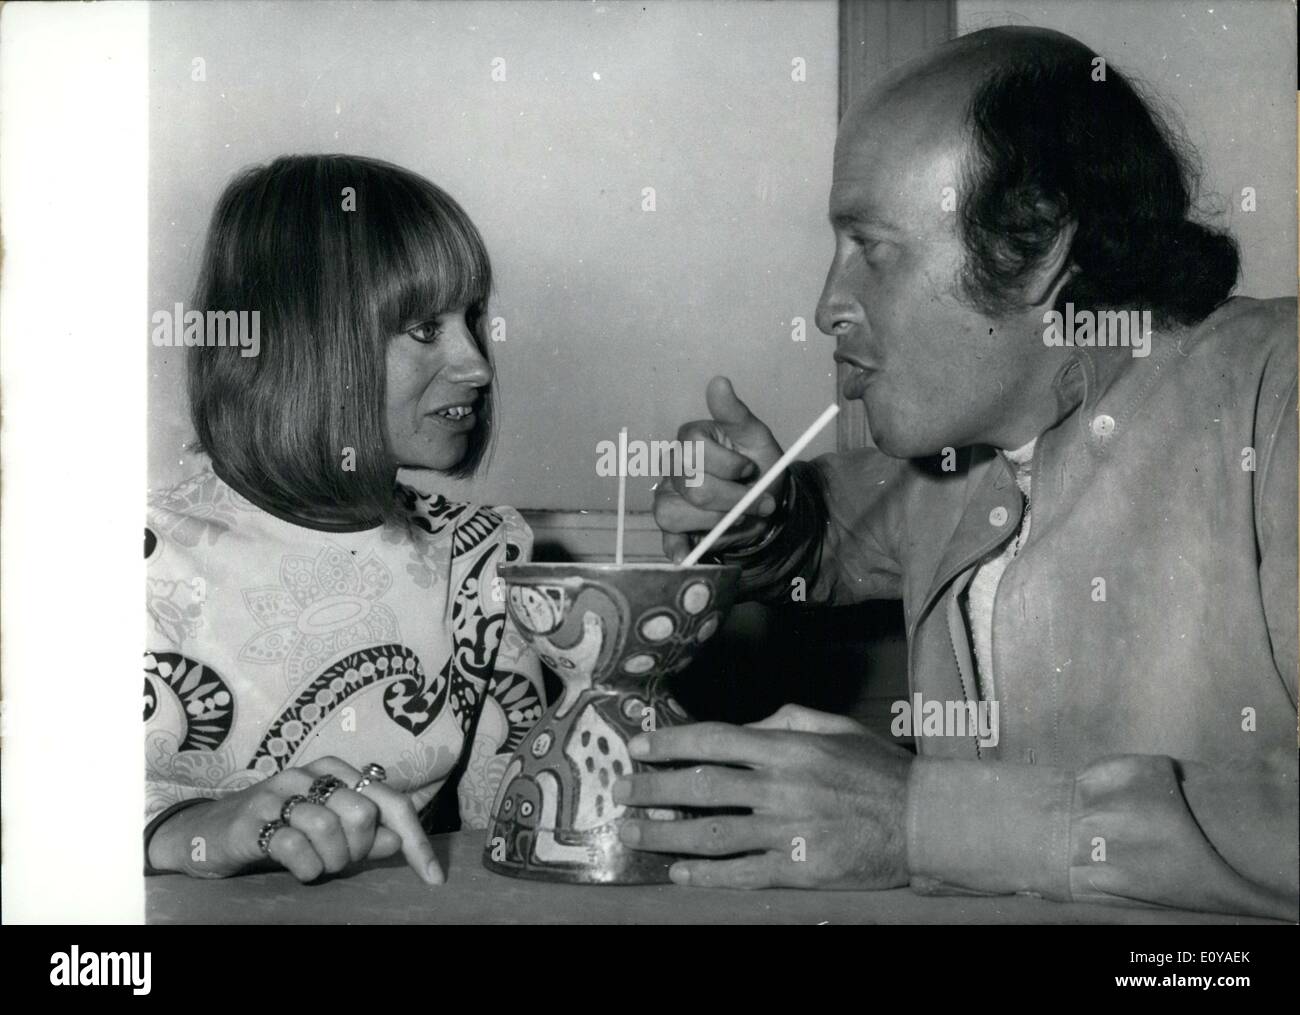 Lug. 05, 1969 - Rita Tushingham onorato xix International Festival del Cinema di Berlino con la sua presenza. Lei è il protagonista di ''Danach,'' Inghilterra del contributo per il film festival. Qui si è visto con Richard Lester all'Hilton-Hotel condividendo un drink. Lester è il regista del film. Foto Stock